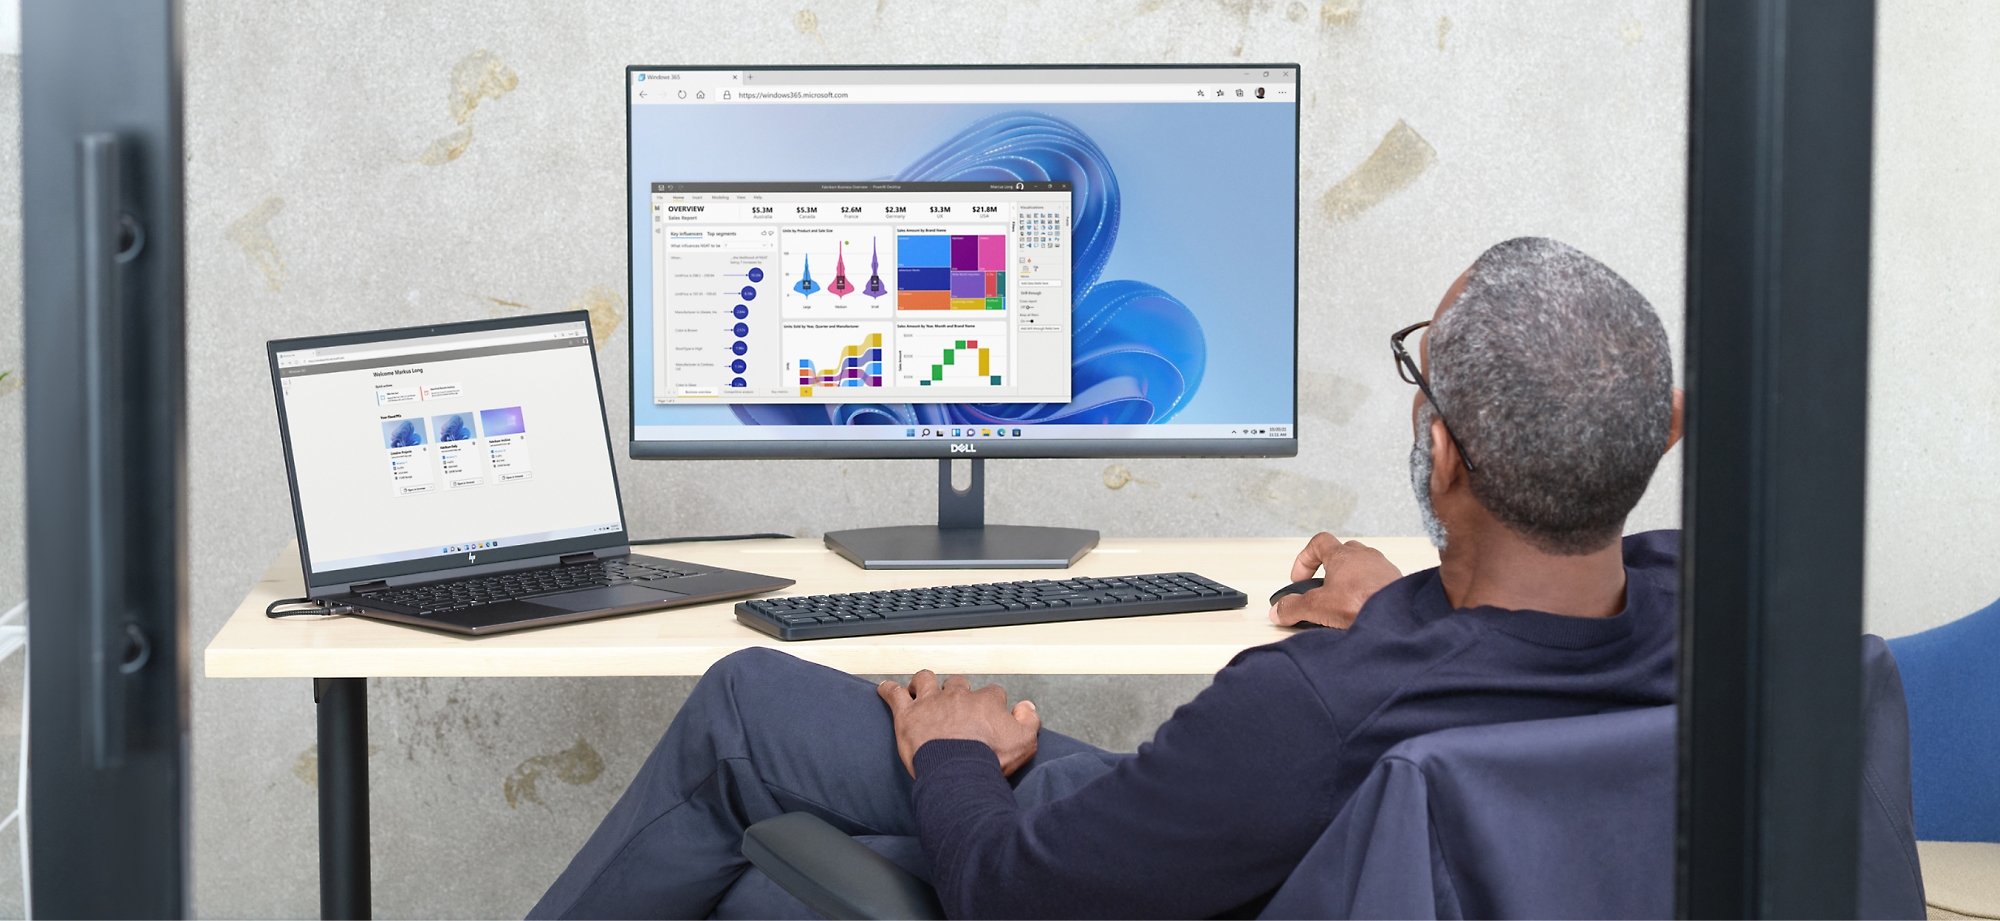 En mann ser gjennom datadiagrammer på en dataskjerm og bærbar datamaskin i et kontormiljø.